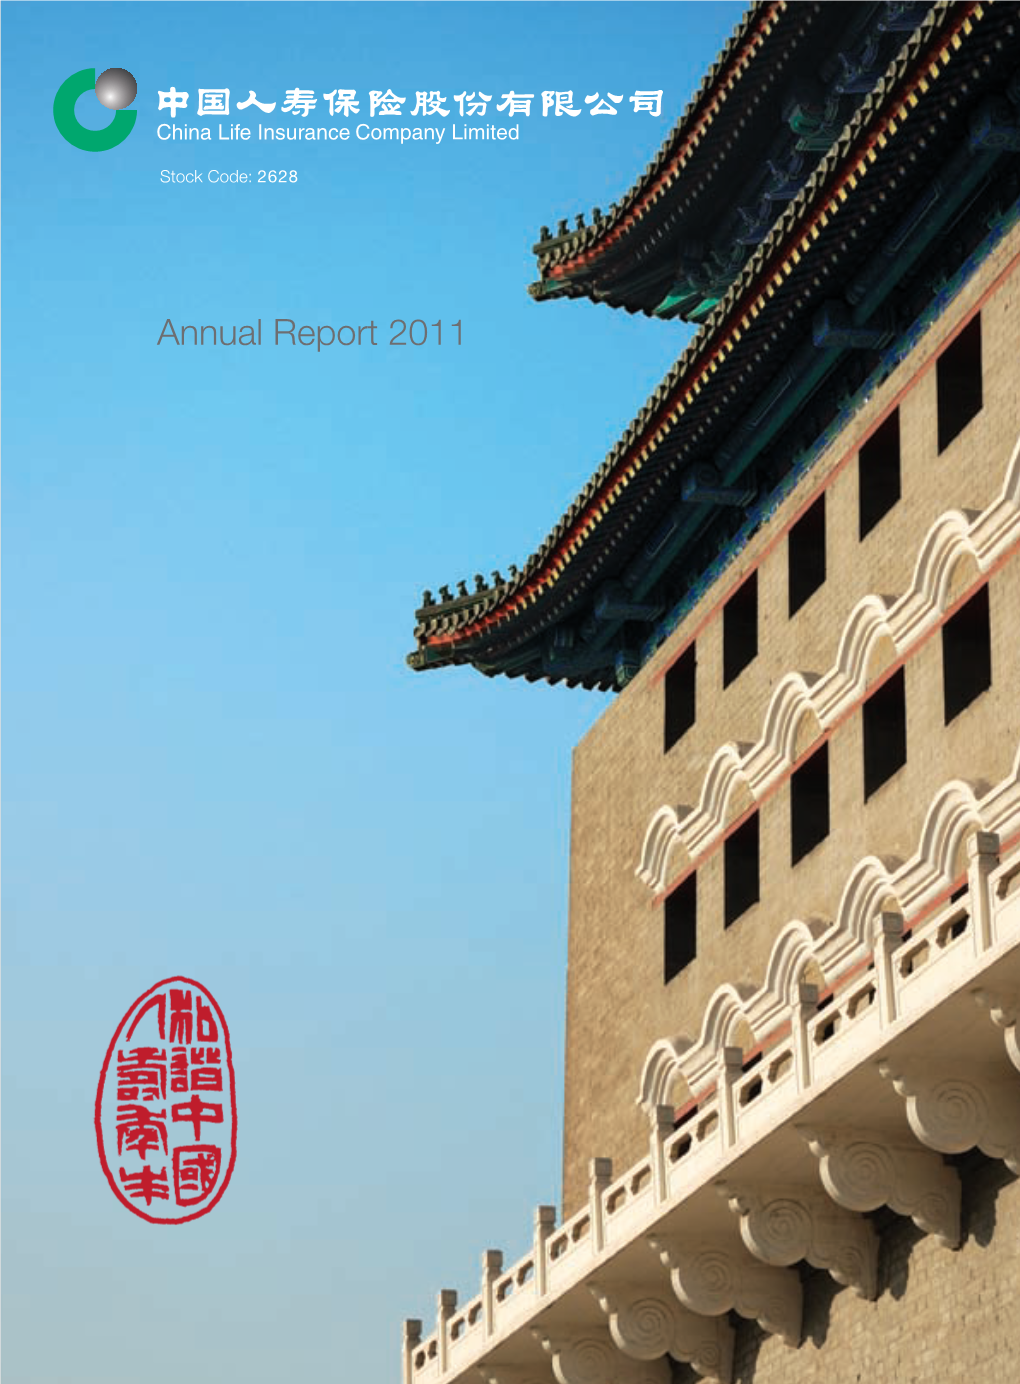 Annual Report 2011 Annual Report